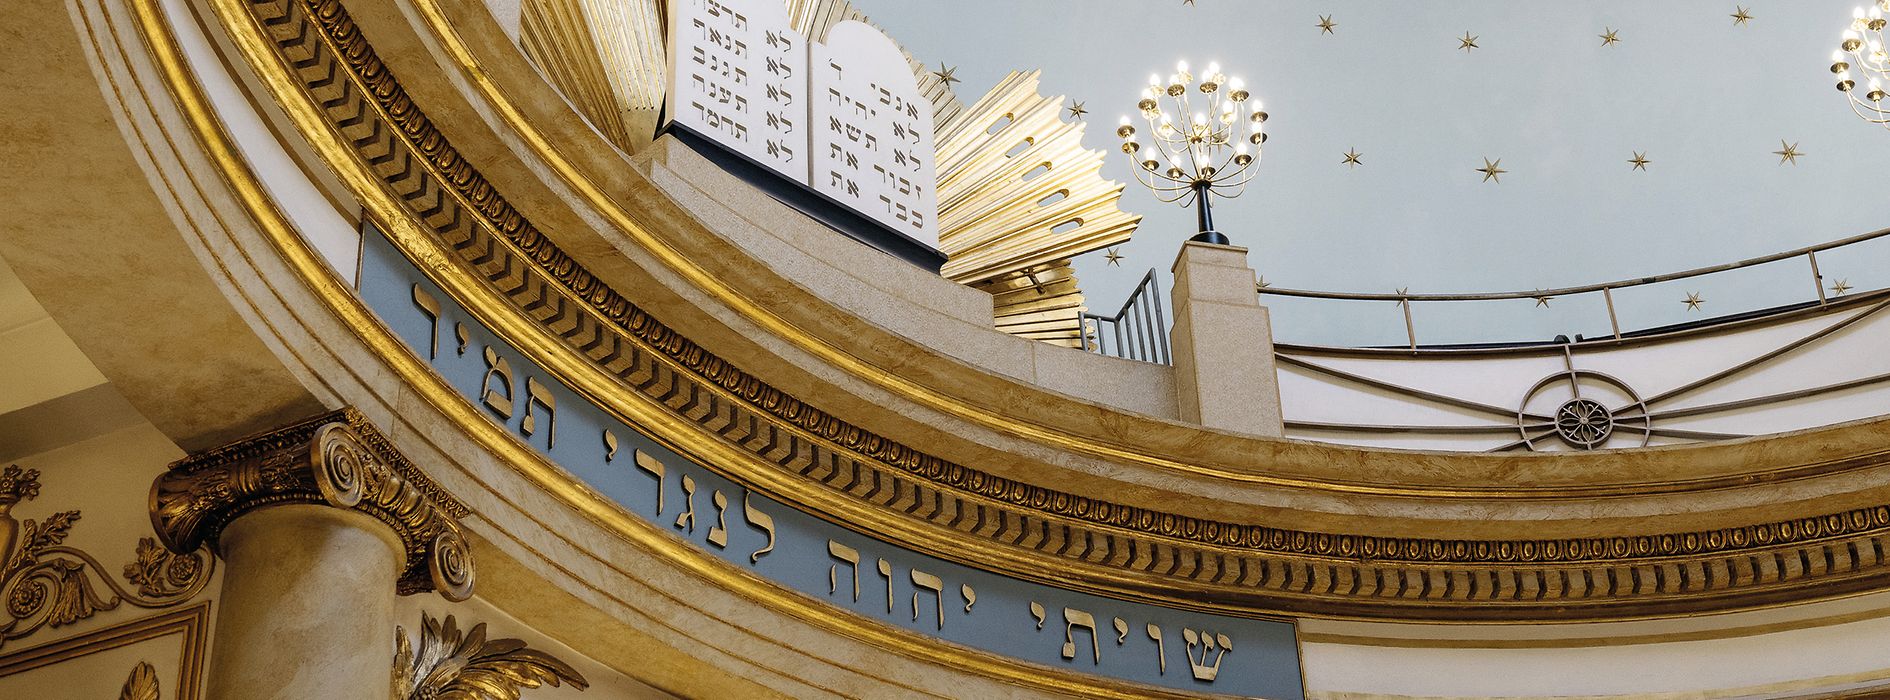 Городской храм еврейской общины